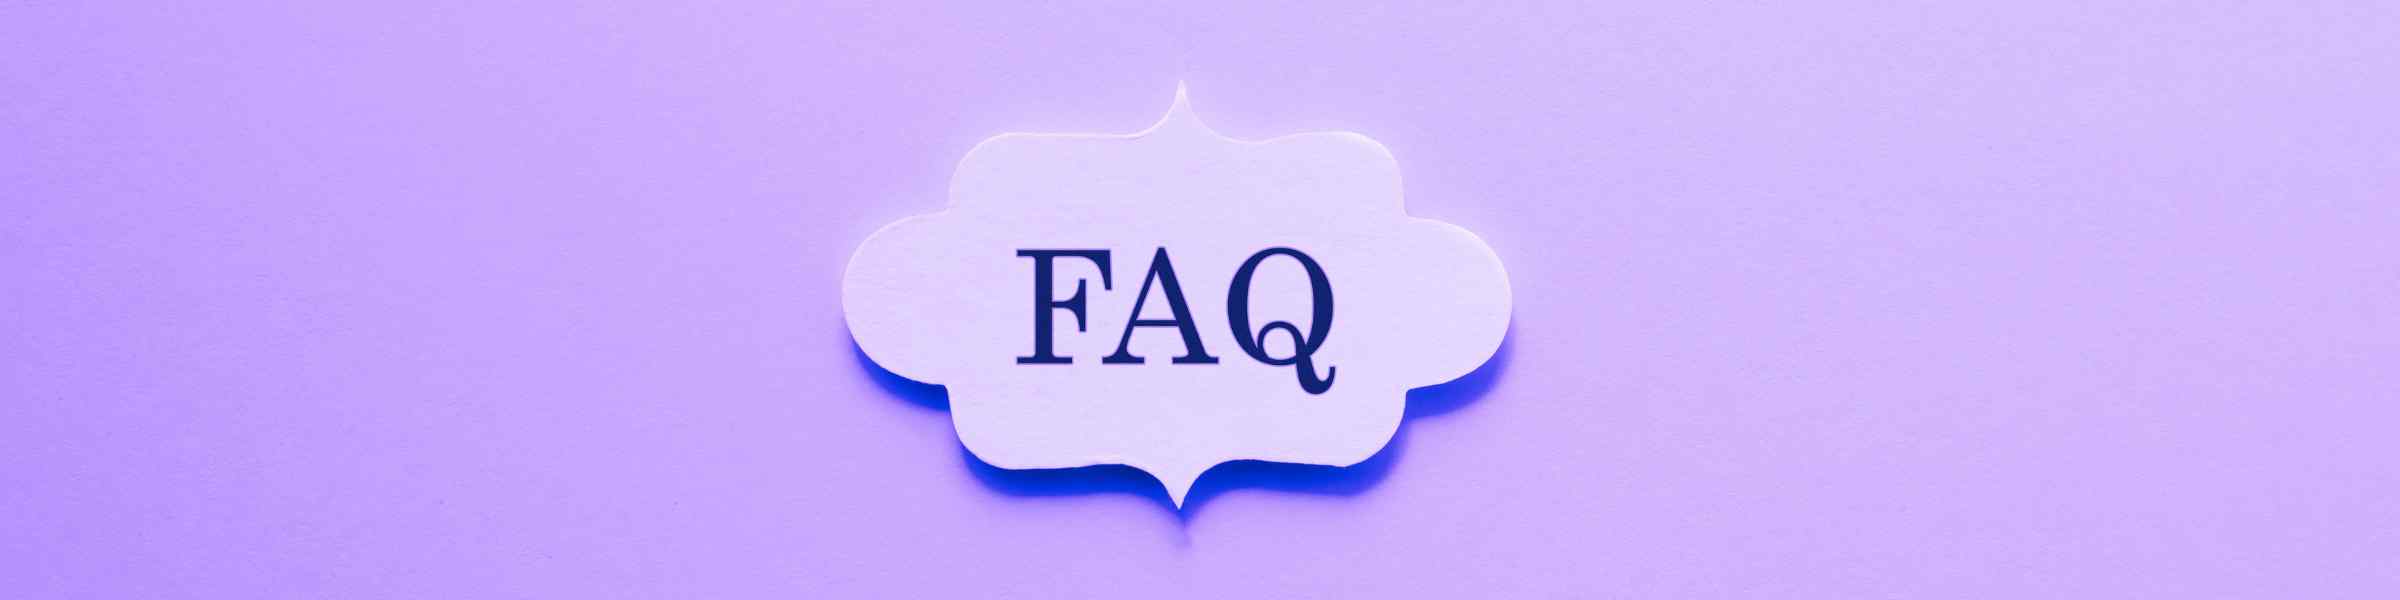 FAQ saffron and Menopause